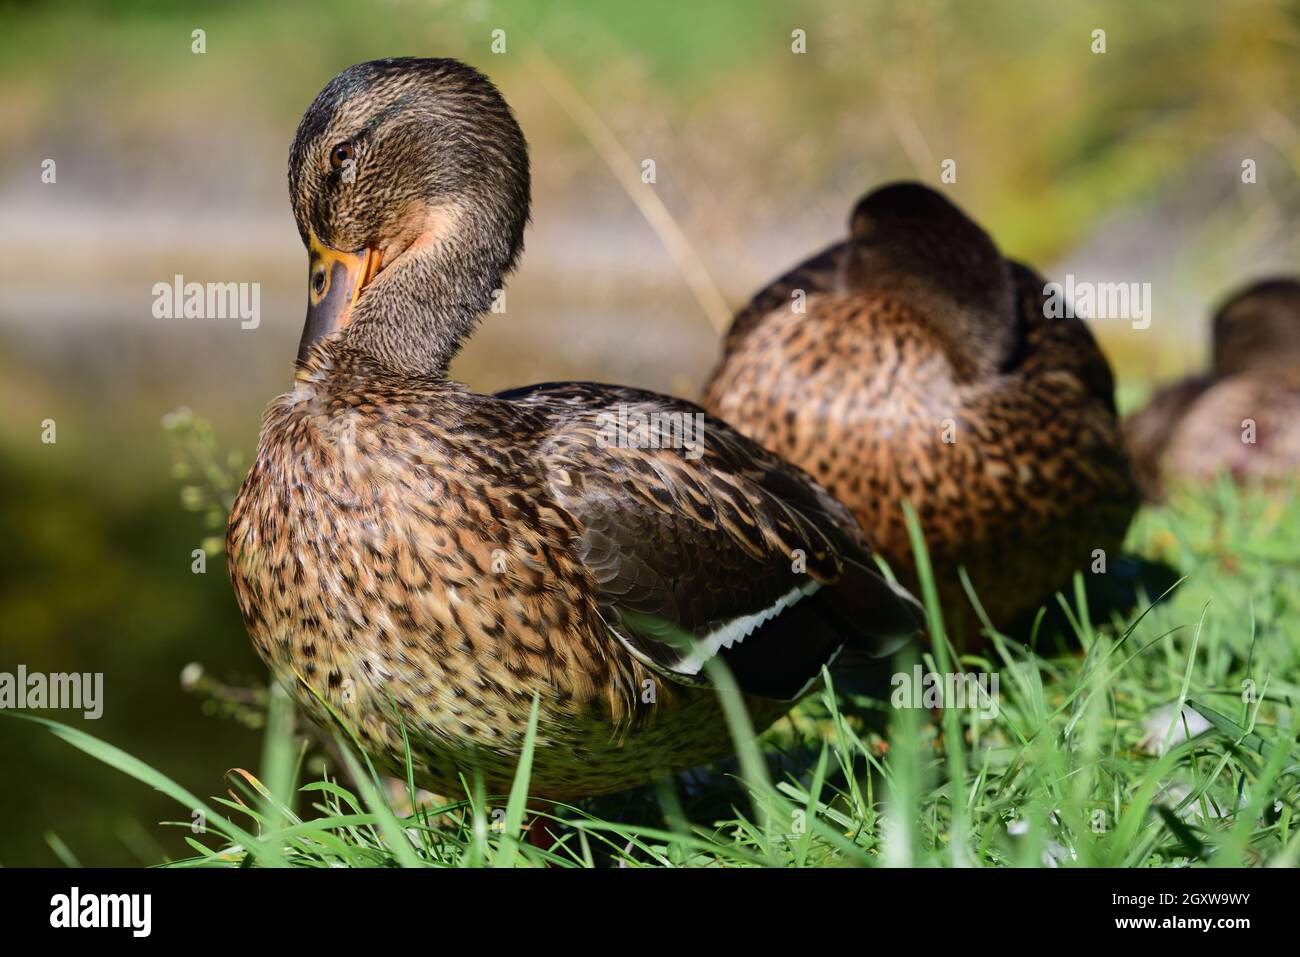 Mehrere braune Enten sitzen eine hinter der anderen am Rand einer Wiese. Die vorderste Ente streckt ihren Hals nach oben und reinigt ihr Gefieder Stockfoto